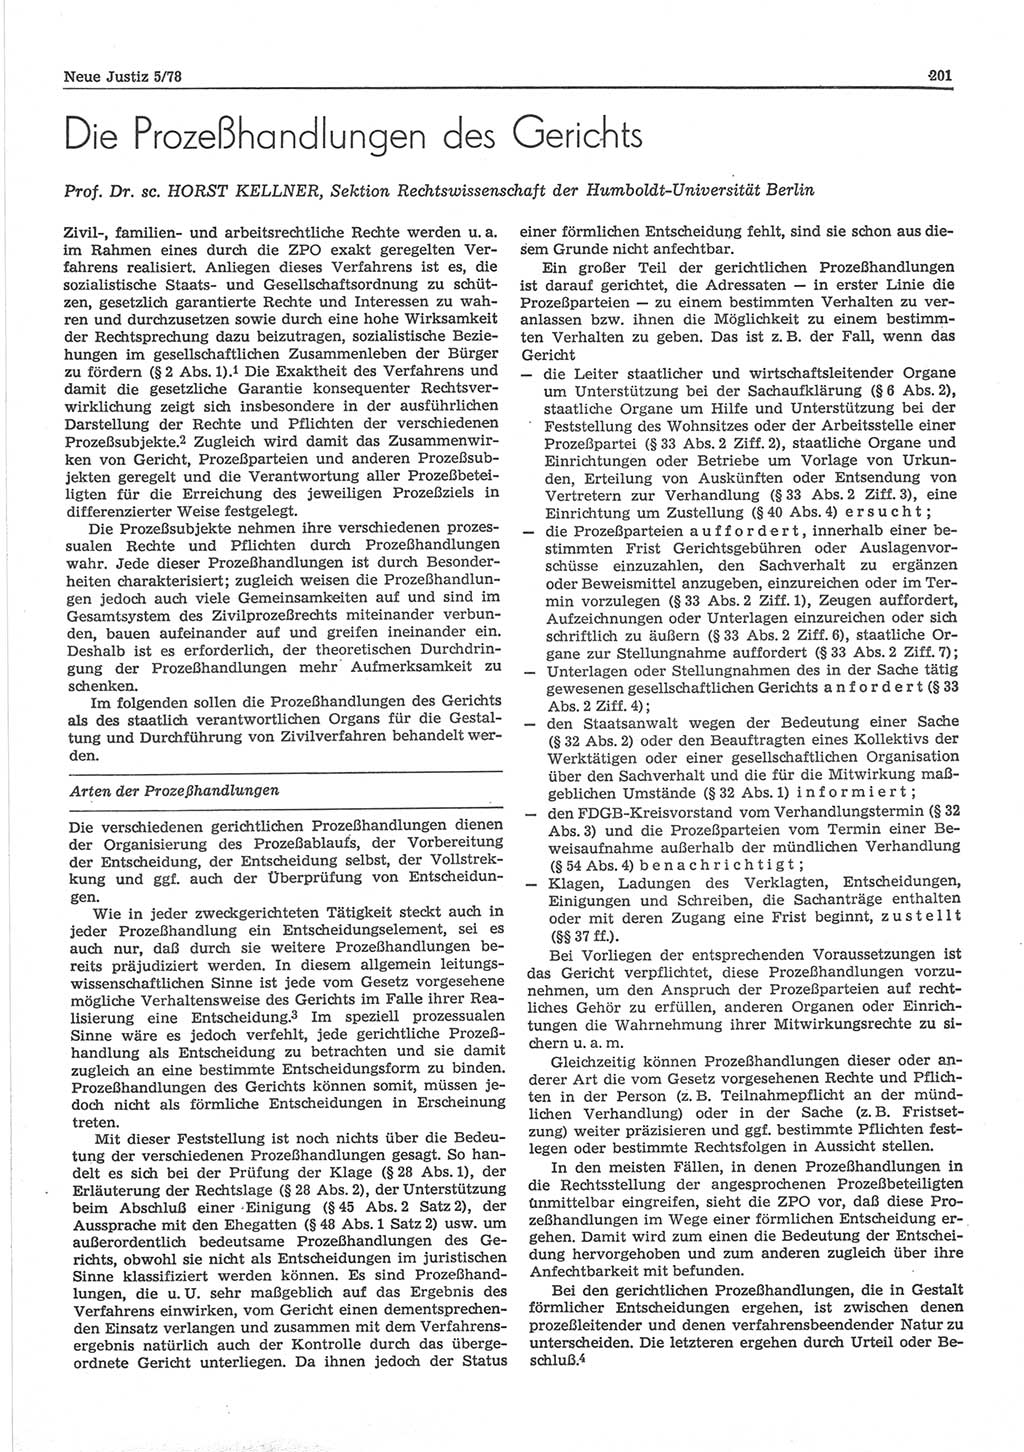 Neue Justiz (NJ), Zeitschrift für sozialistisches Recht und Gesetzlichkeit [Deutsche Demokratische Republik (DDR)], 32. Jahrgang 1978, Seite 201 (NJ DDR 1978, S. 201)